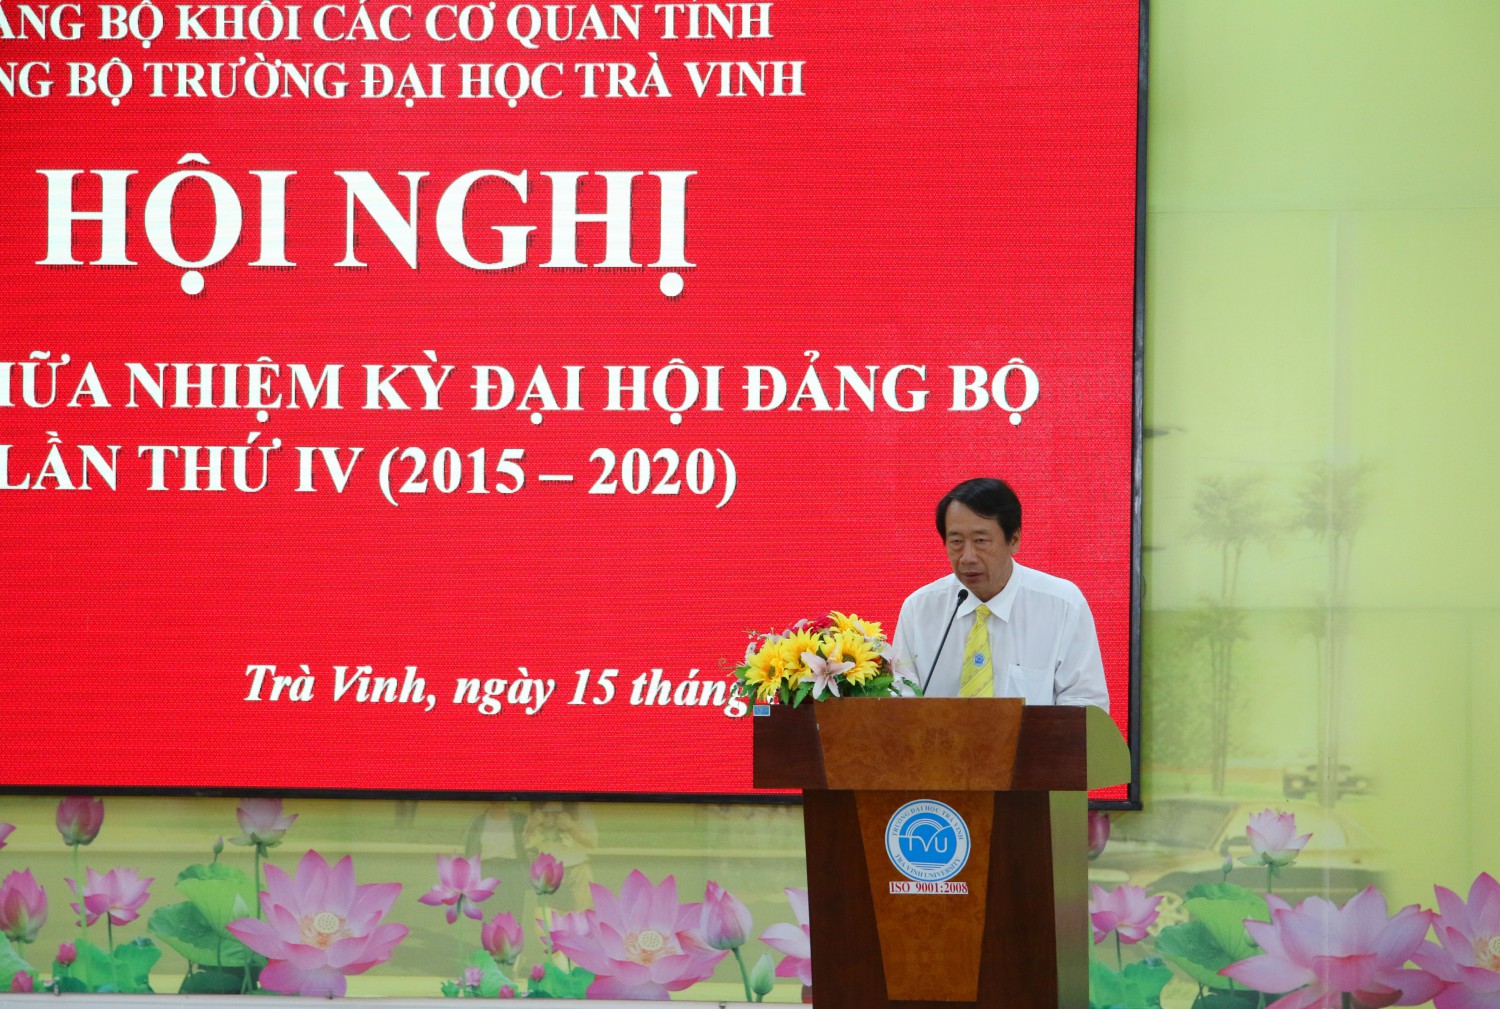 Đồng chí Phạm Tiết Khánh – Bí thư Đảng ủy, Hiệu trưởng Nhà phát biểu khai mạc Hội nghị